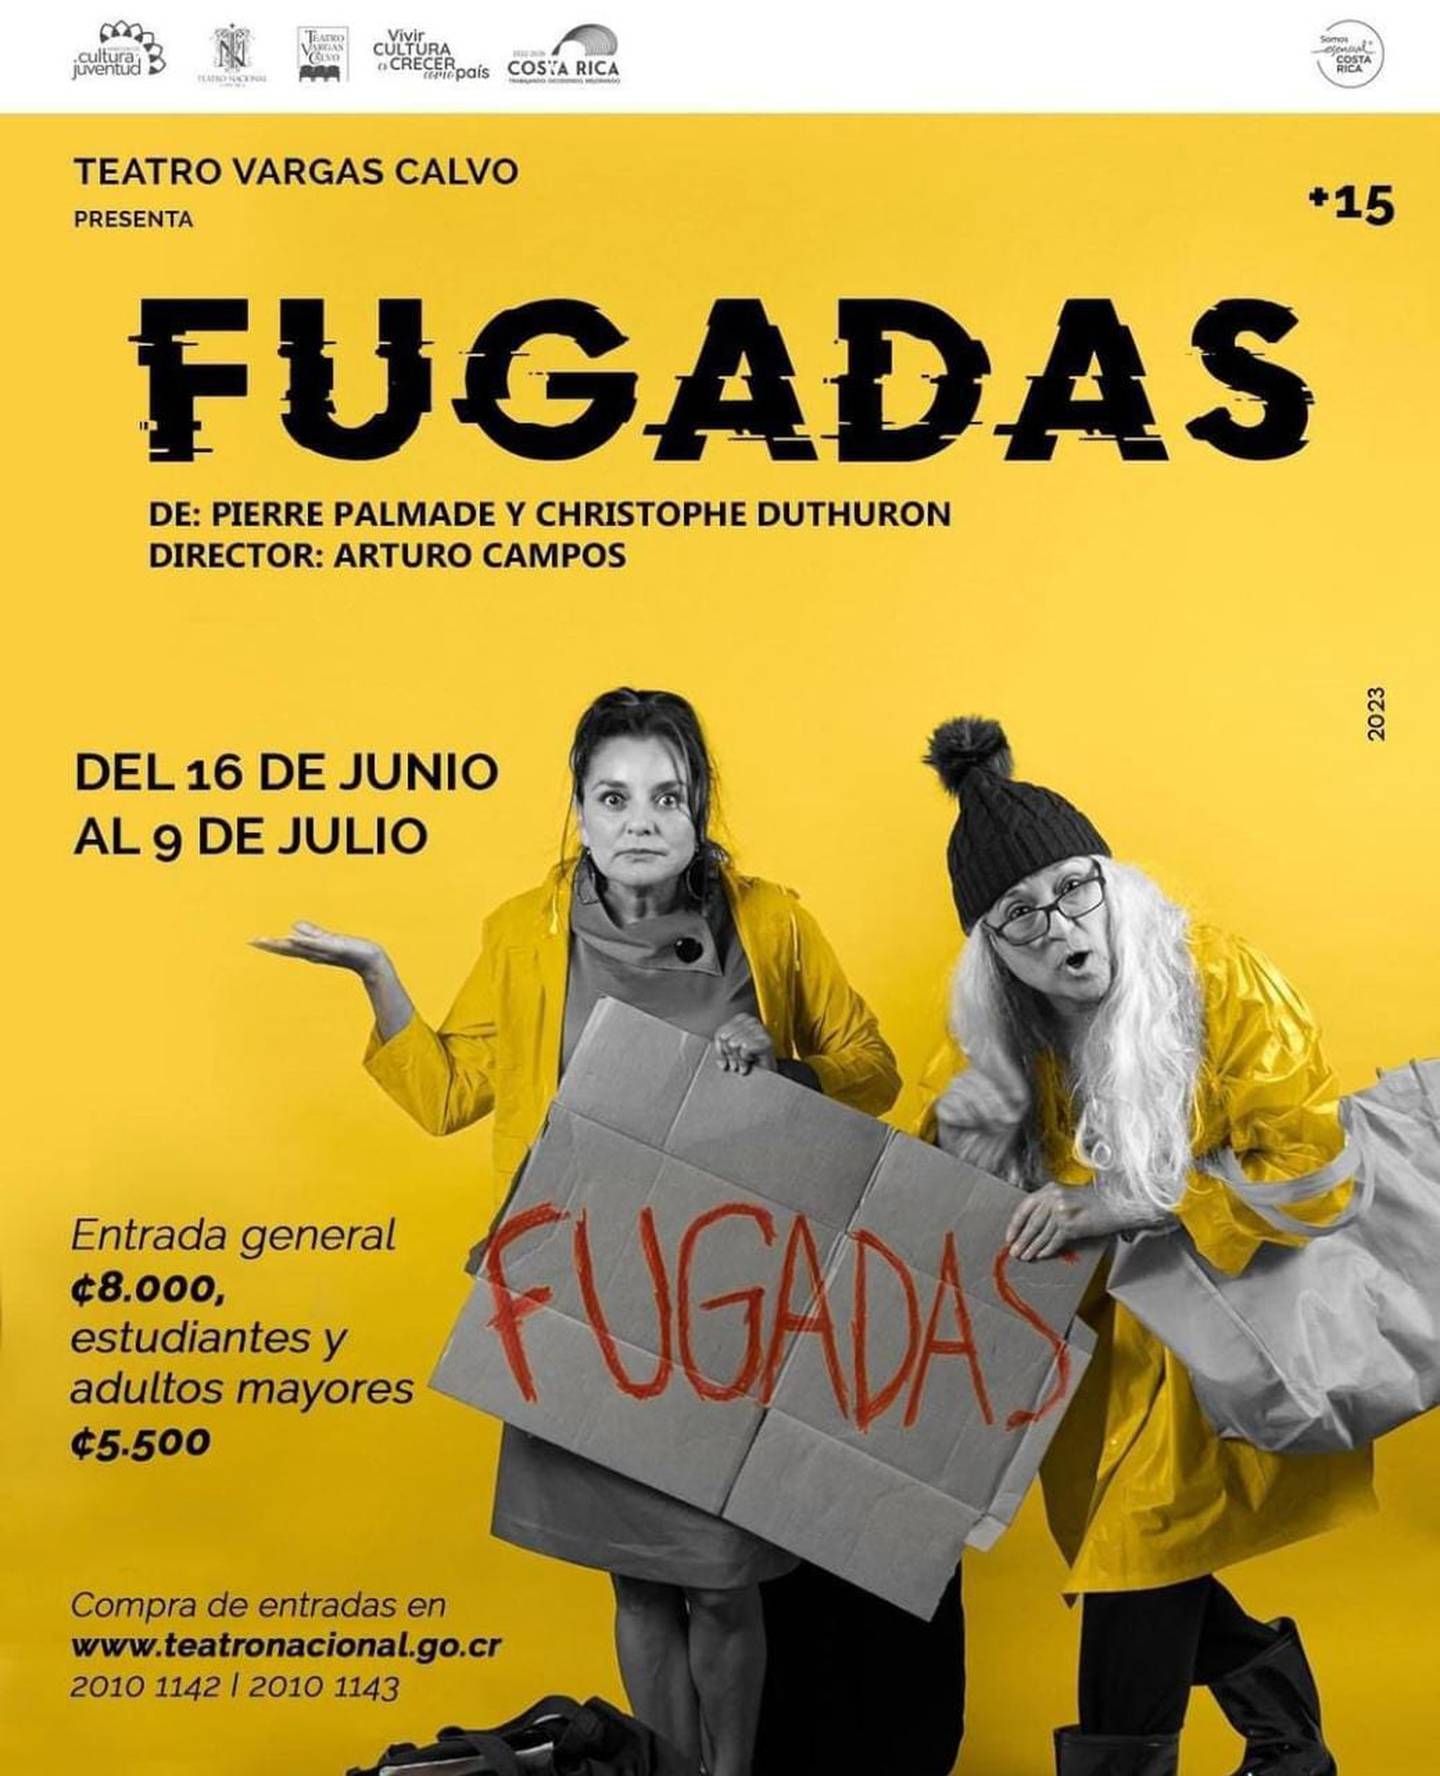 La obra de teatro Fugadas inicia el vienres 16 de junio. Instagram.